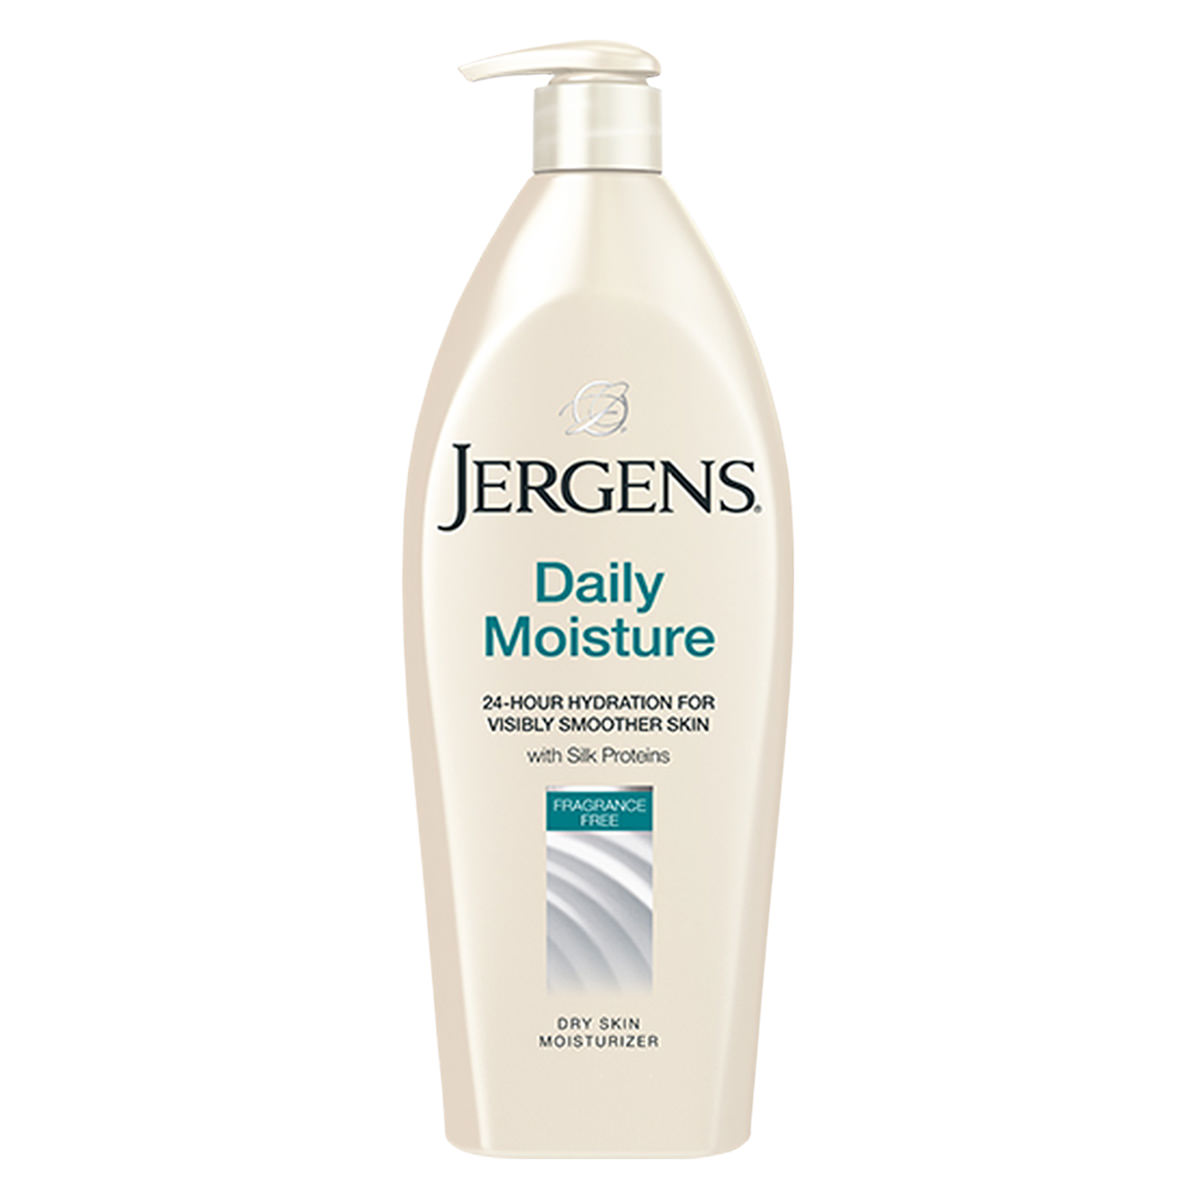 Jergens-Daily-Moisture-Dry-Skin-Moisturizer-sfw(1)